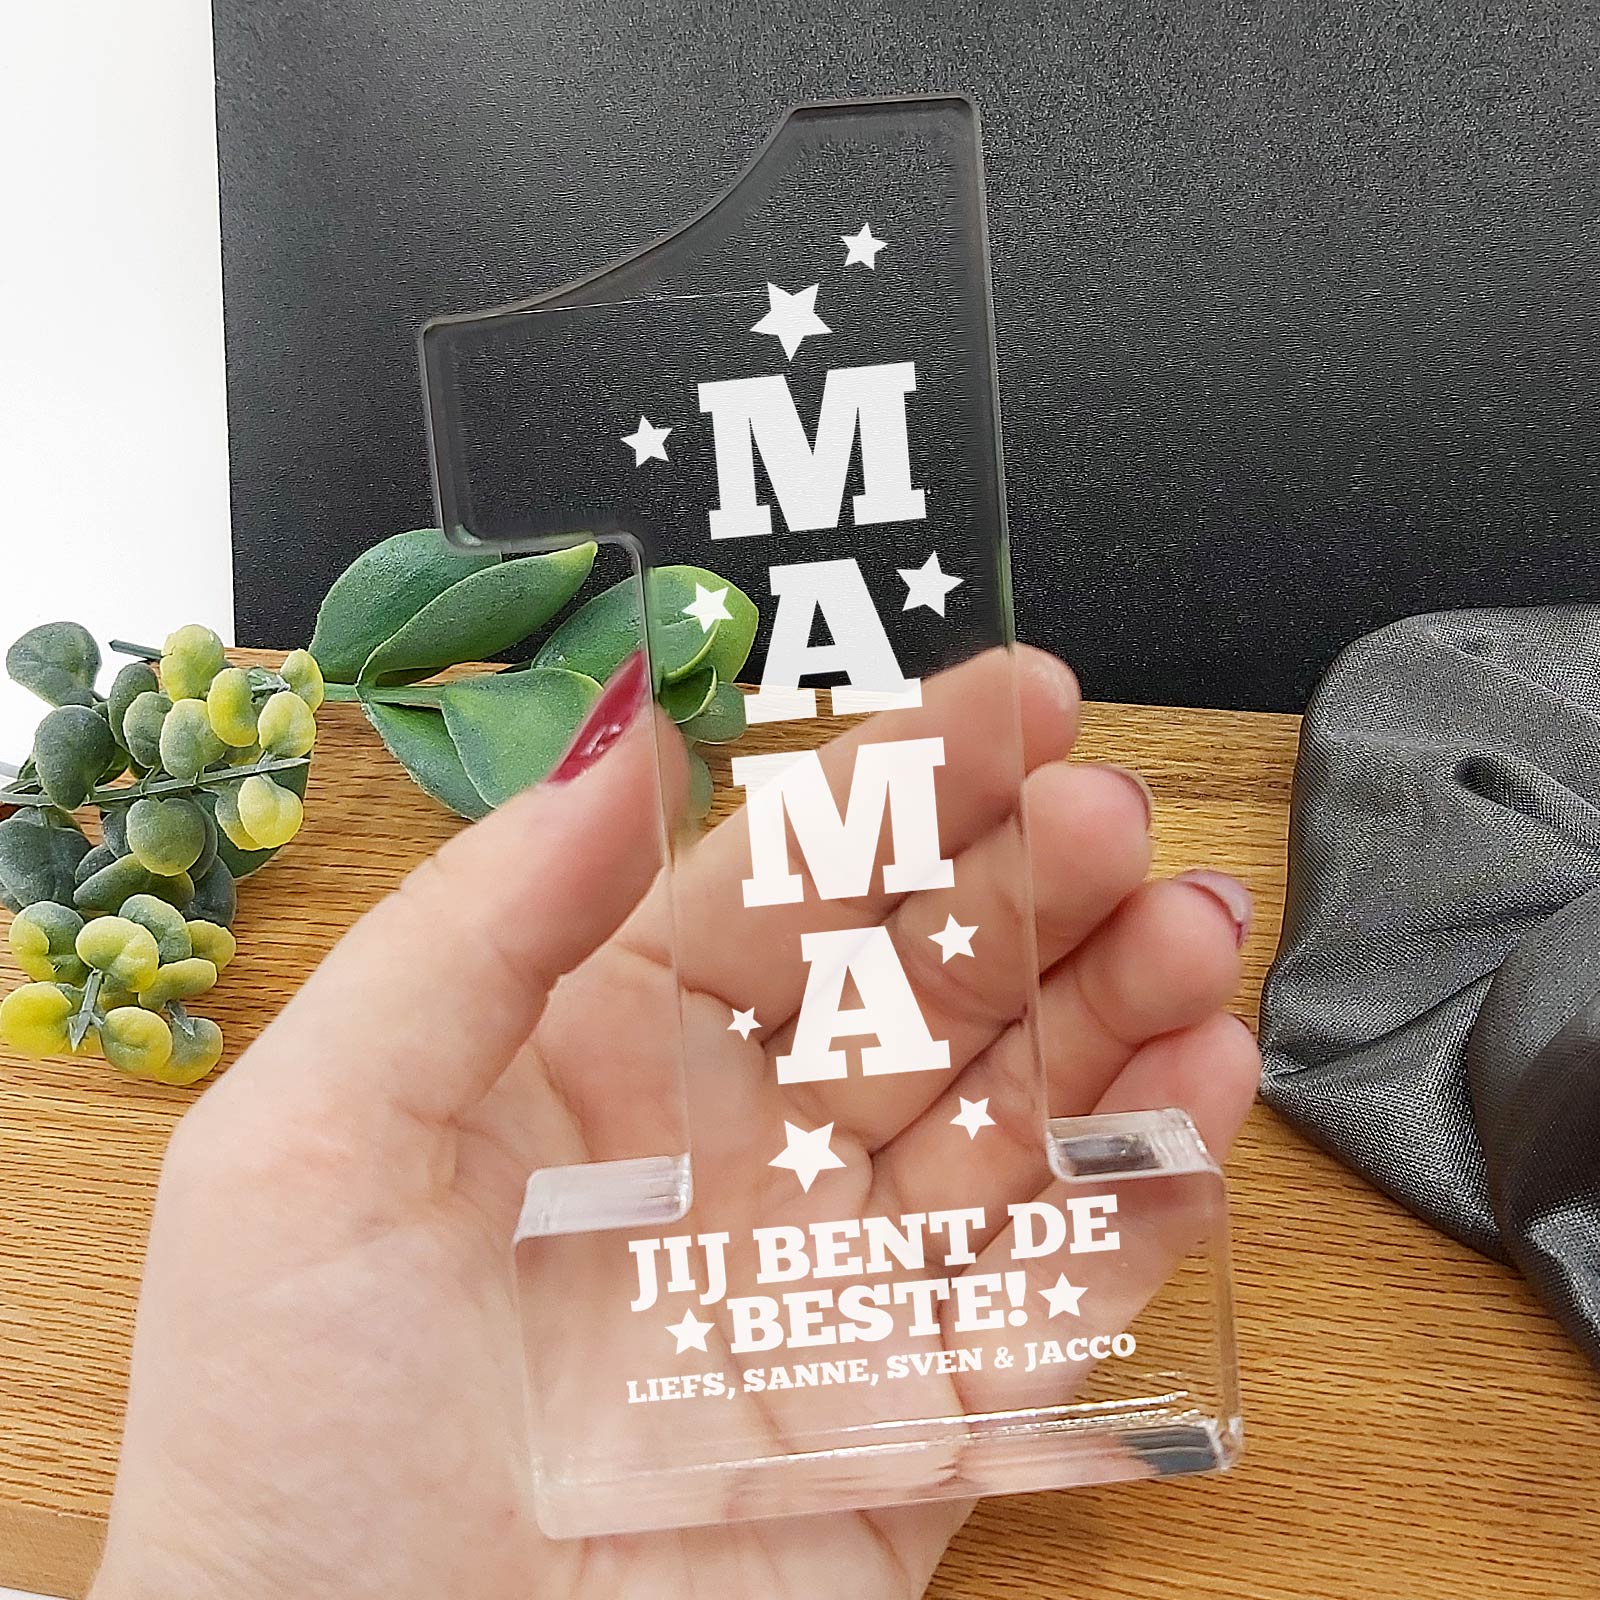 Jij Bent de Beste - Gezin #1 Award! - Bella Mia